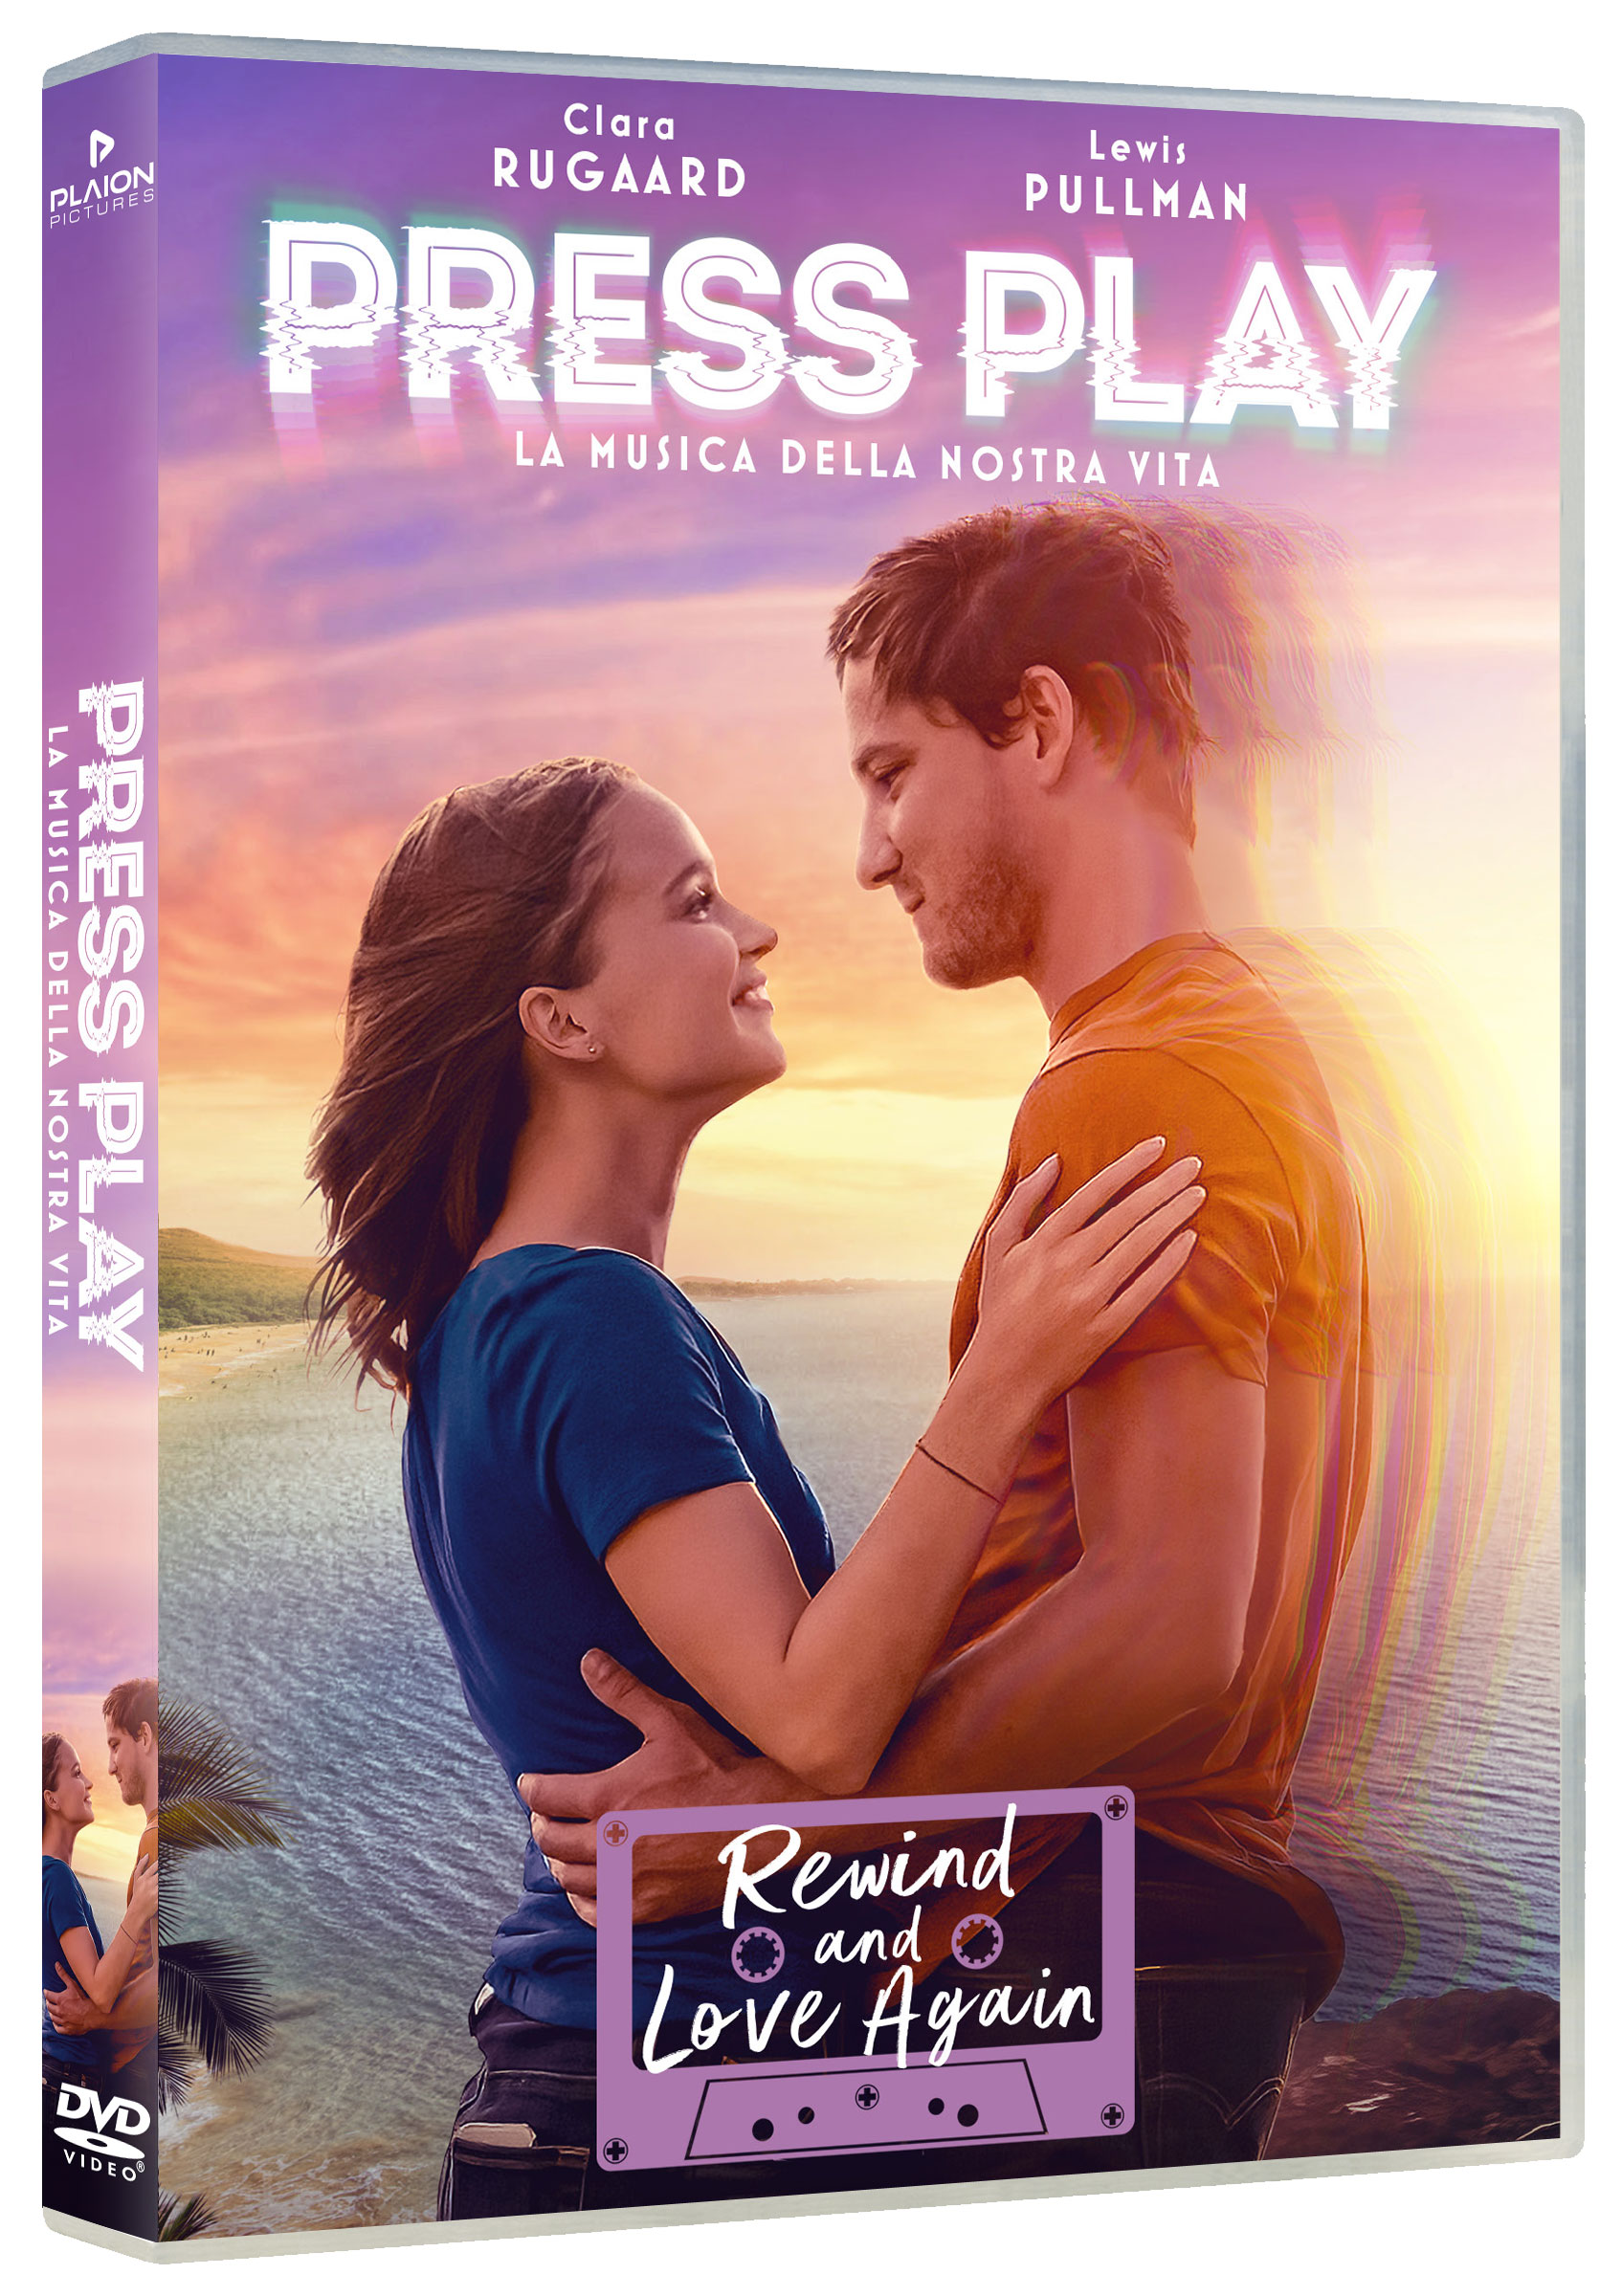 Press Play - La musica della nostra vita in DVD